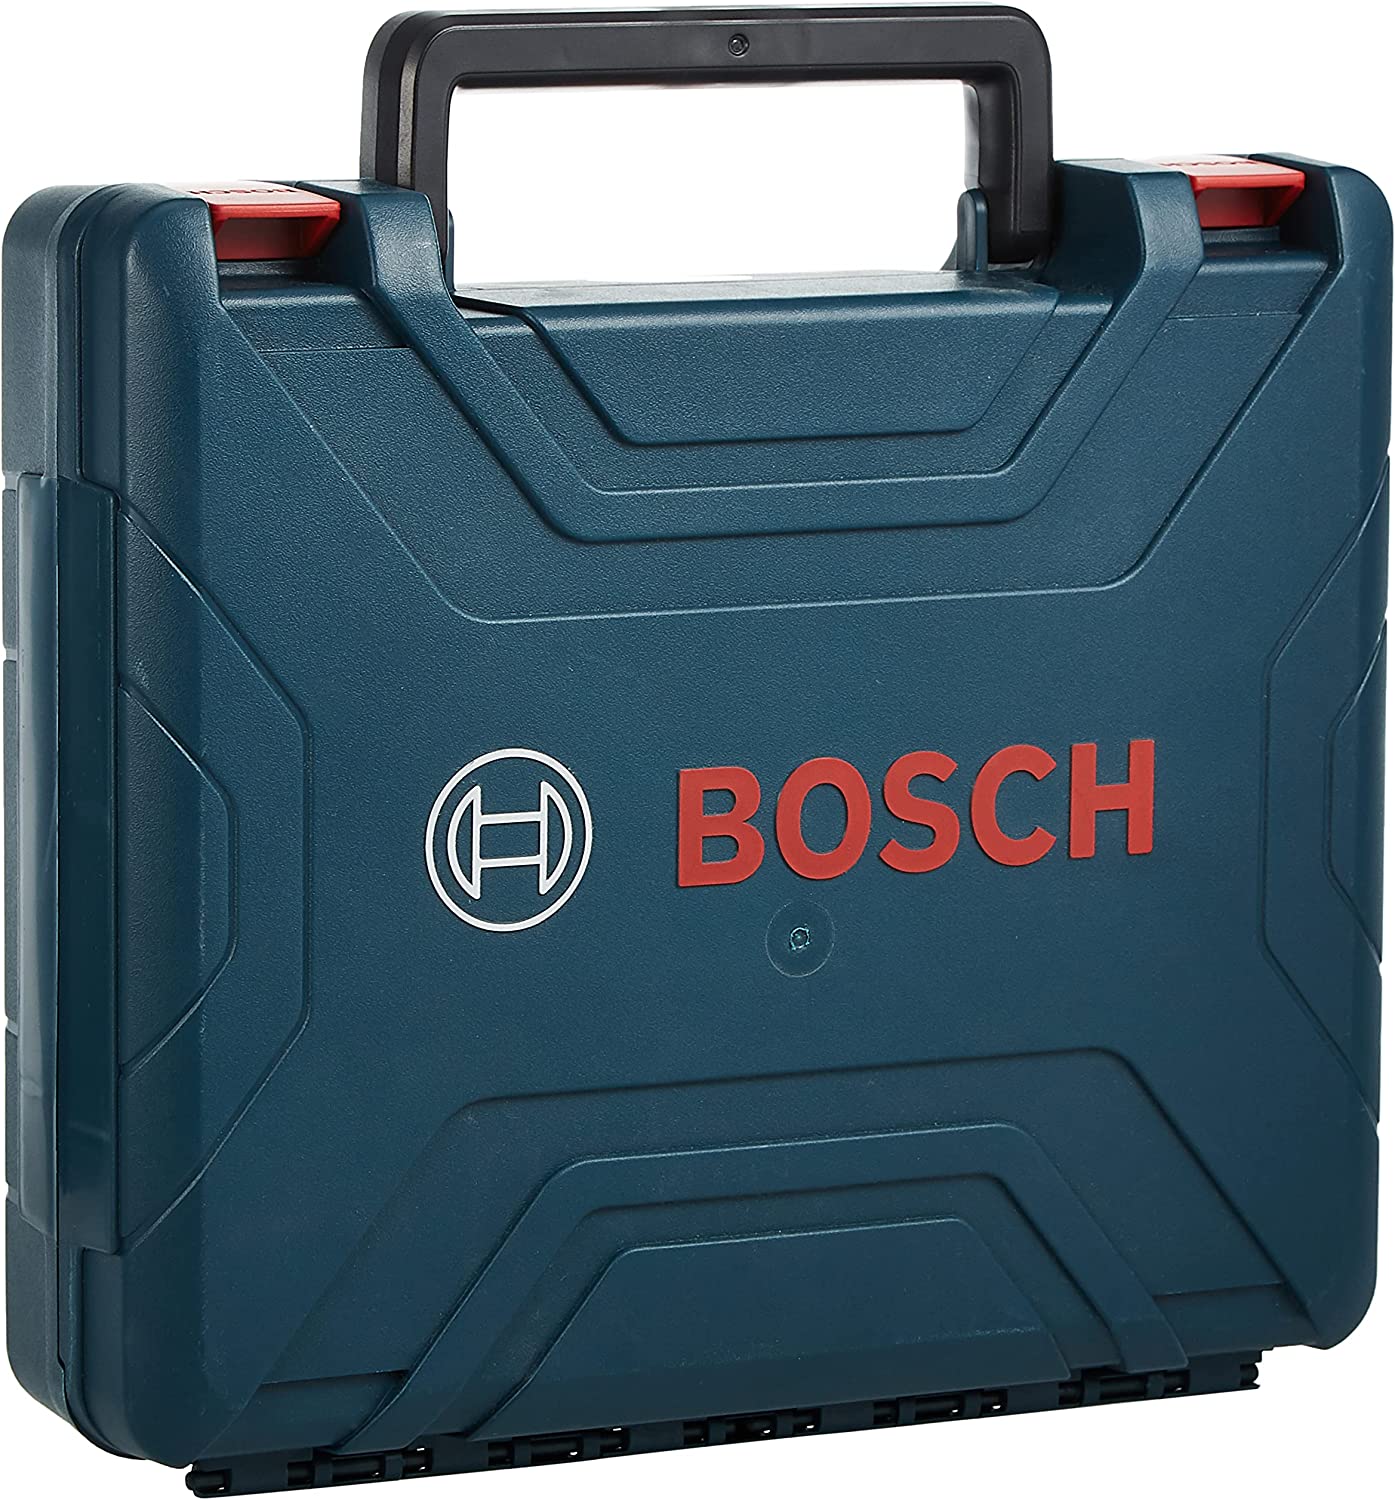 دریل شارژی بوش مدل Bosch Gsr 120-Li - ارسال ۱۰ الی ۱۵ روز کاری